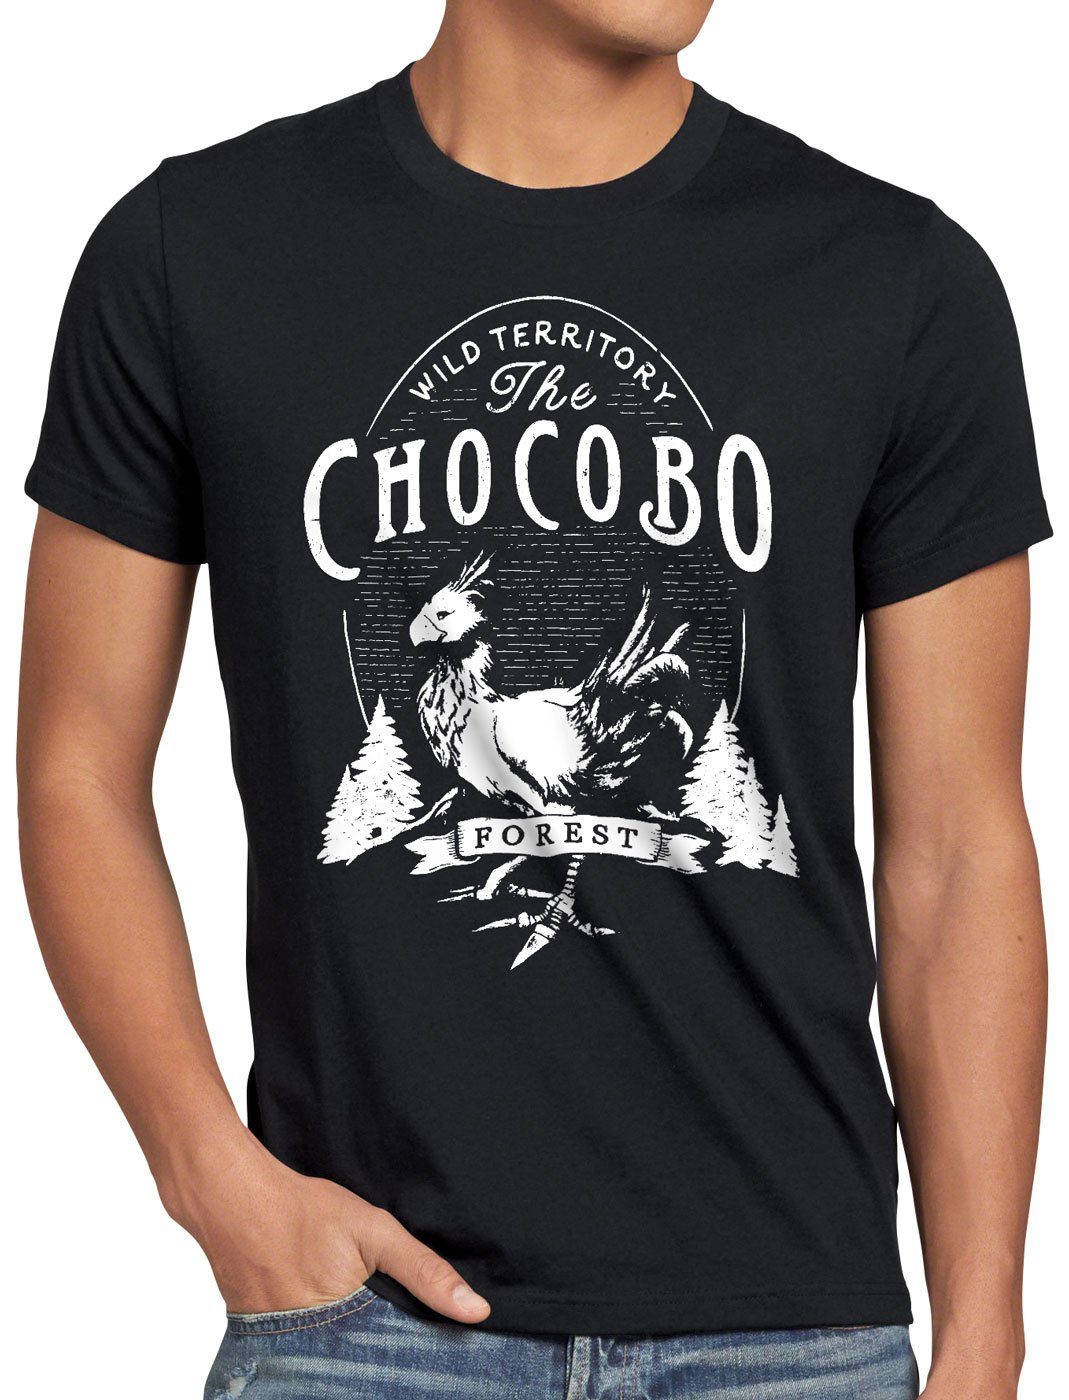 Print-Shirt Wild style3 Herren T-Shirt Chocobo schwarz Rollenspiel final VII